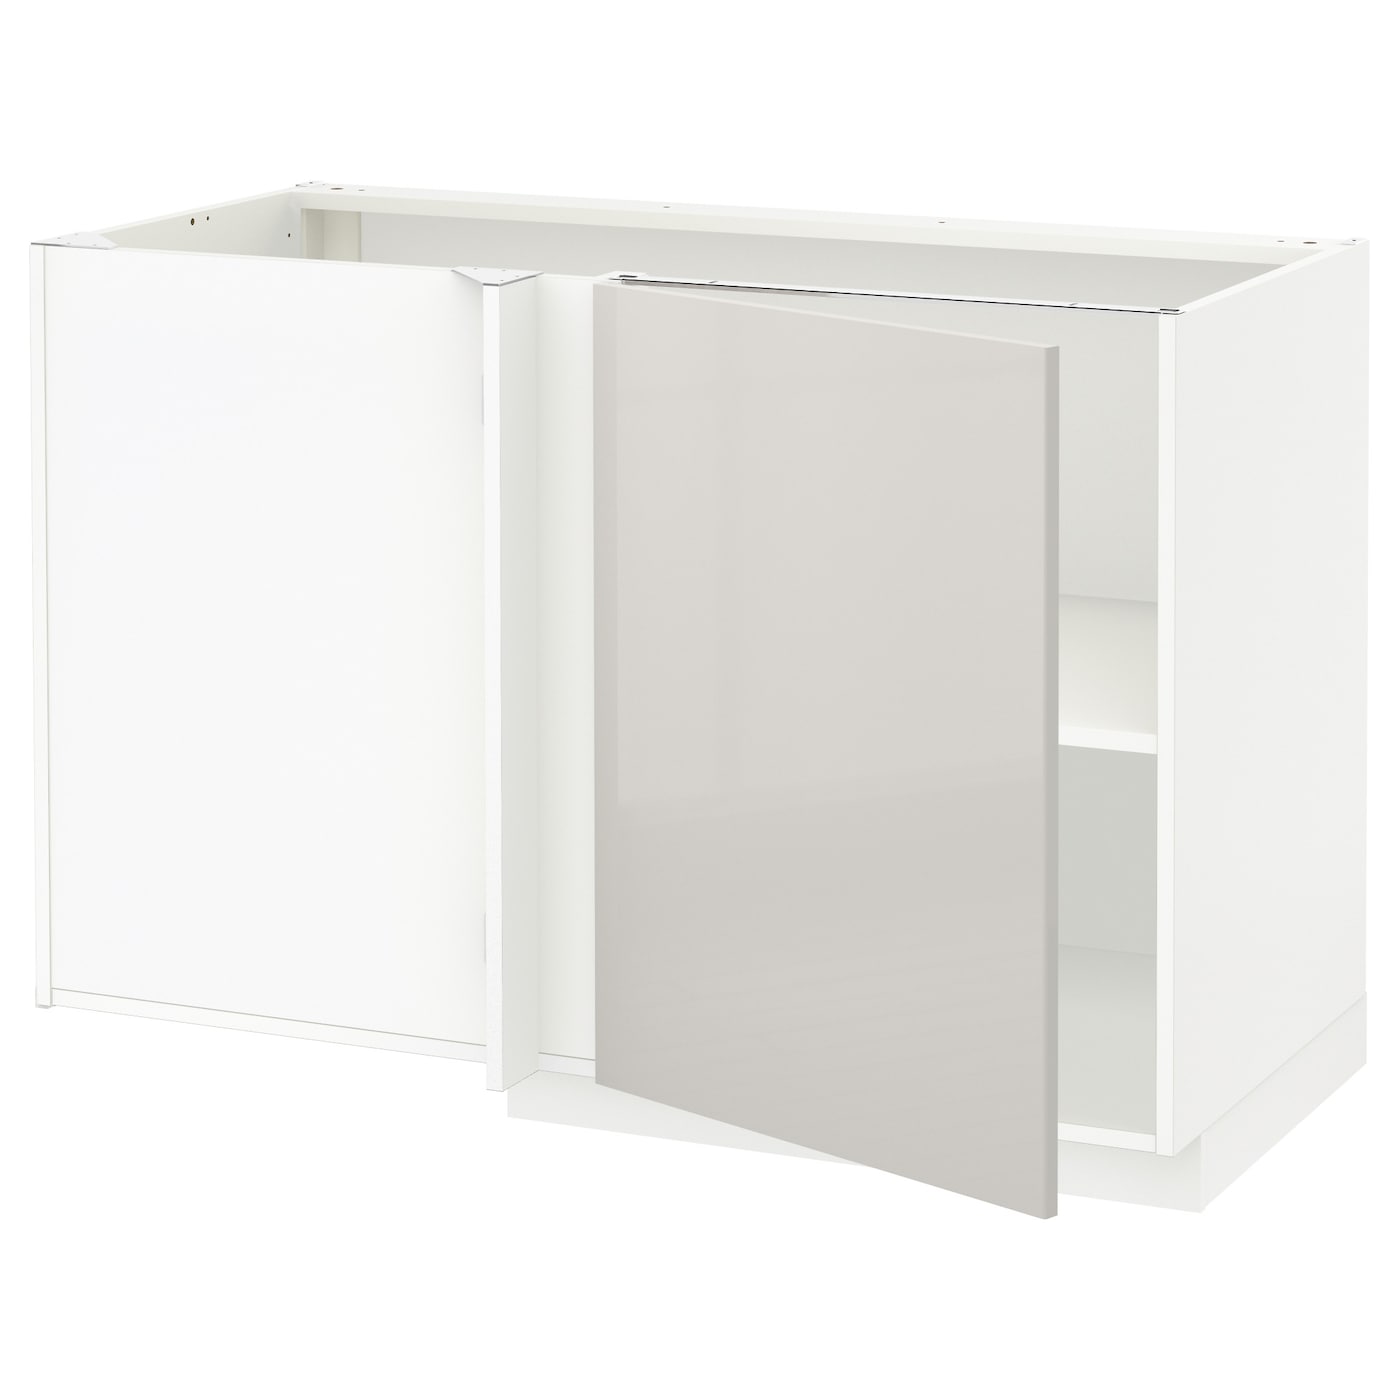 Напольный шкаф  - IKEA METOD, 88x67,5x127,5см, белый/бежевый, МЕТОД ИКЕА